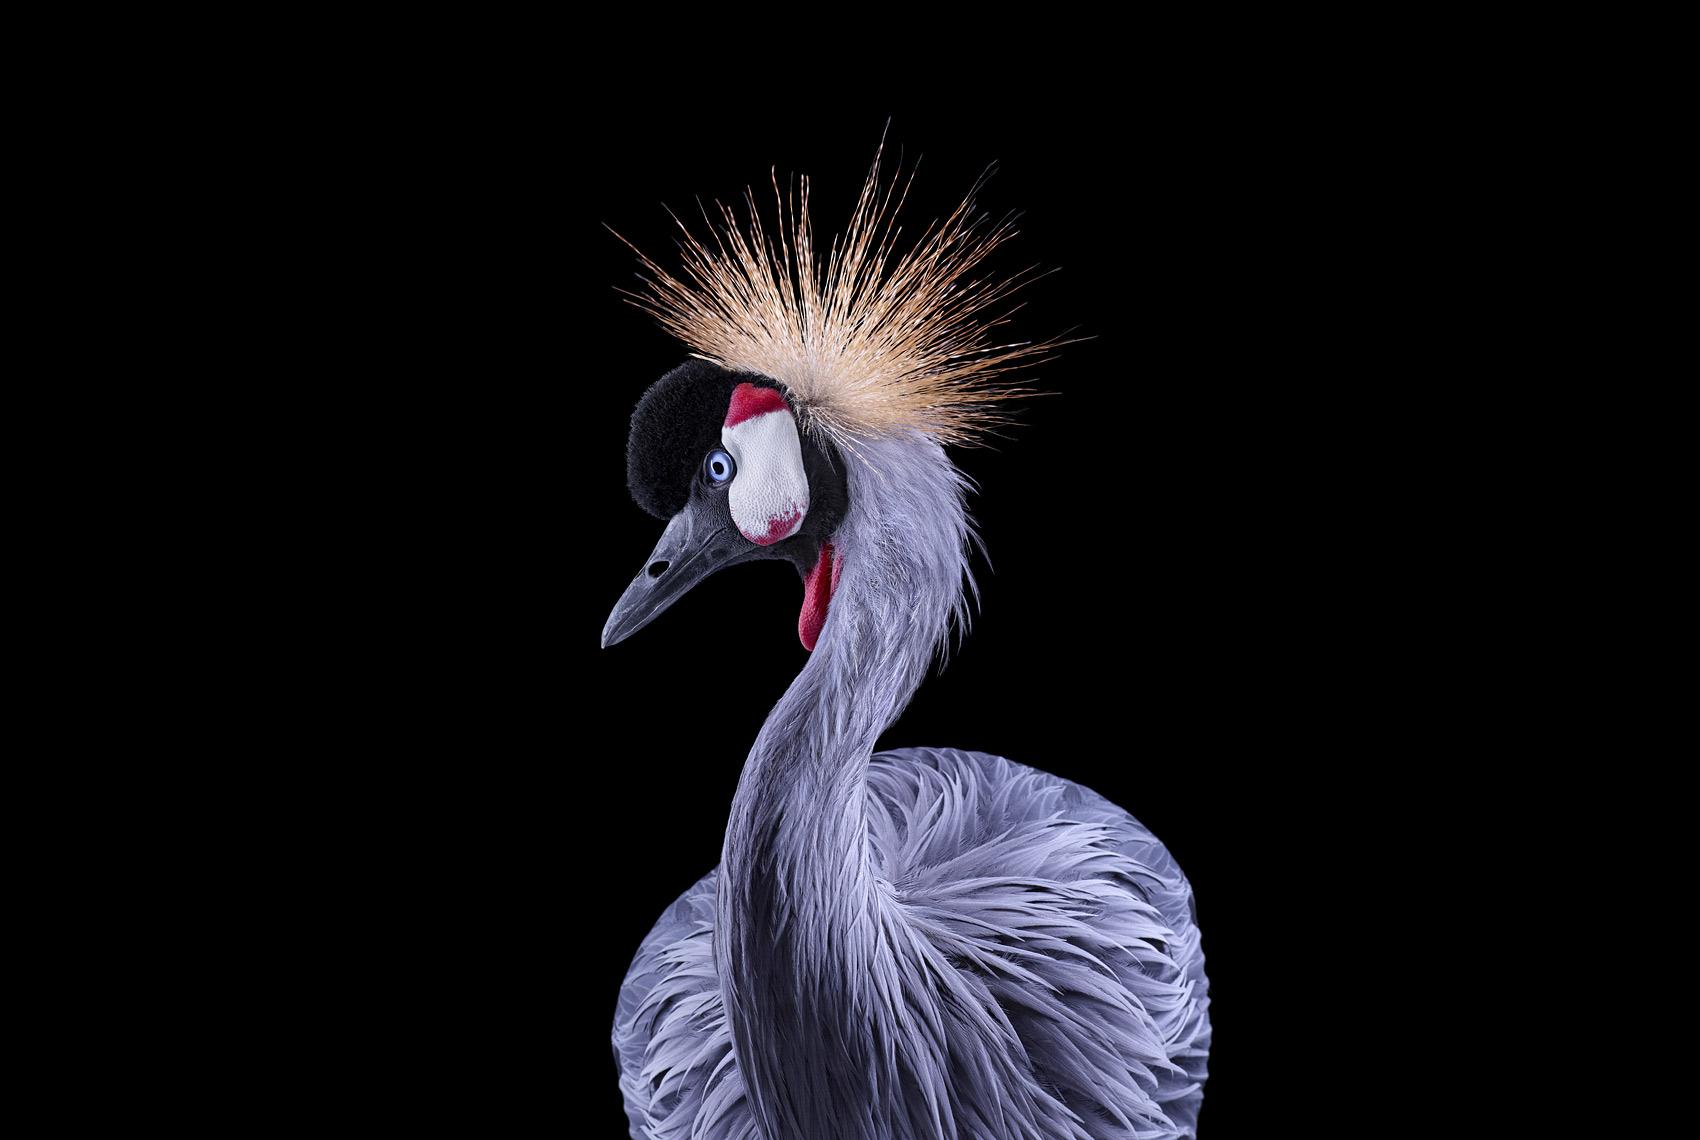 African Crowned Crane #1, Los Angeles, CA, 2011" ist eine limitierte Auflage eines Fotos des zeitgenössischen Künstlers Brad Wilson aus der Serie "Affinity", die Studioporträts von Wildtieren zeigt. 

Dieses Foto wird nur als ungerahmter Abzug